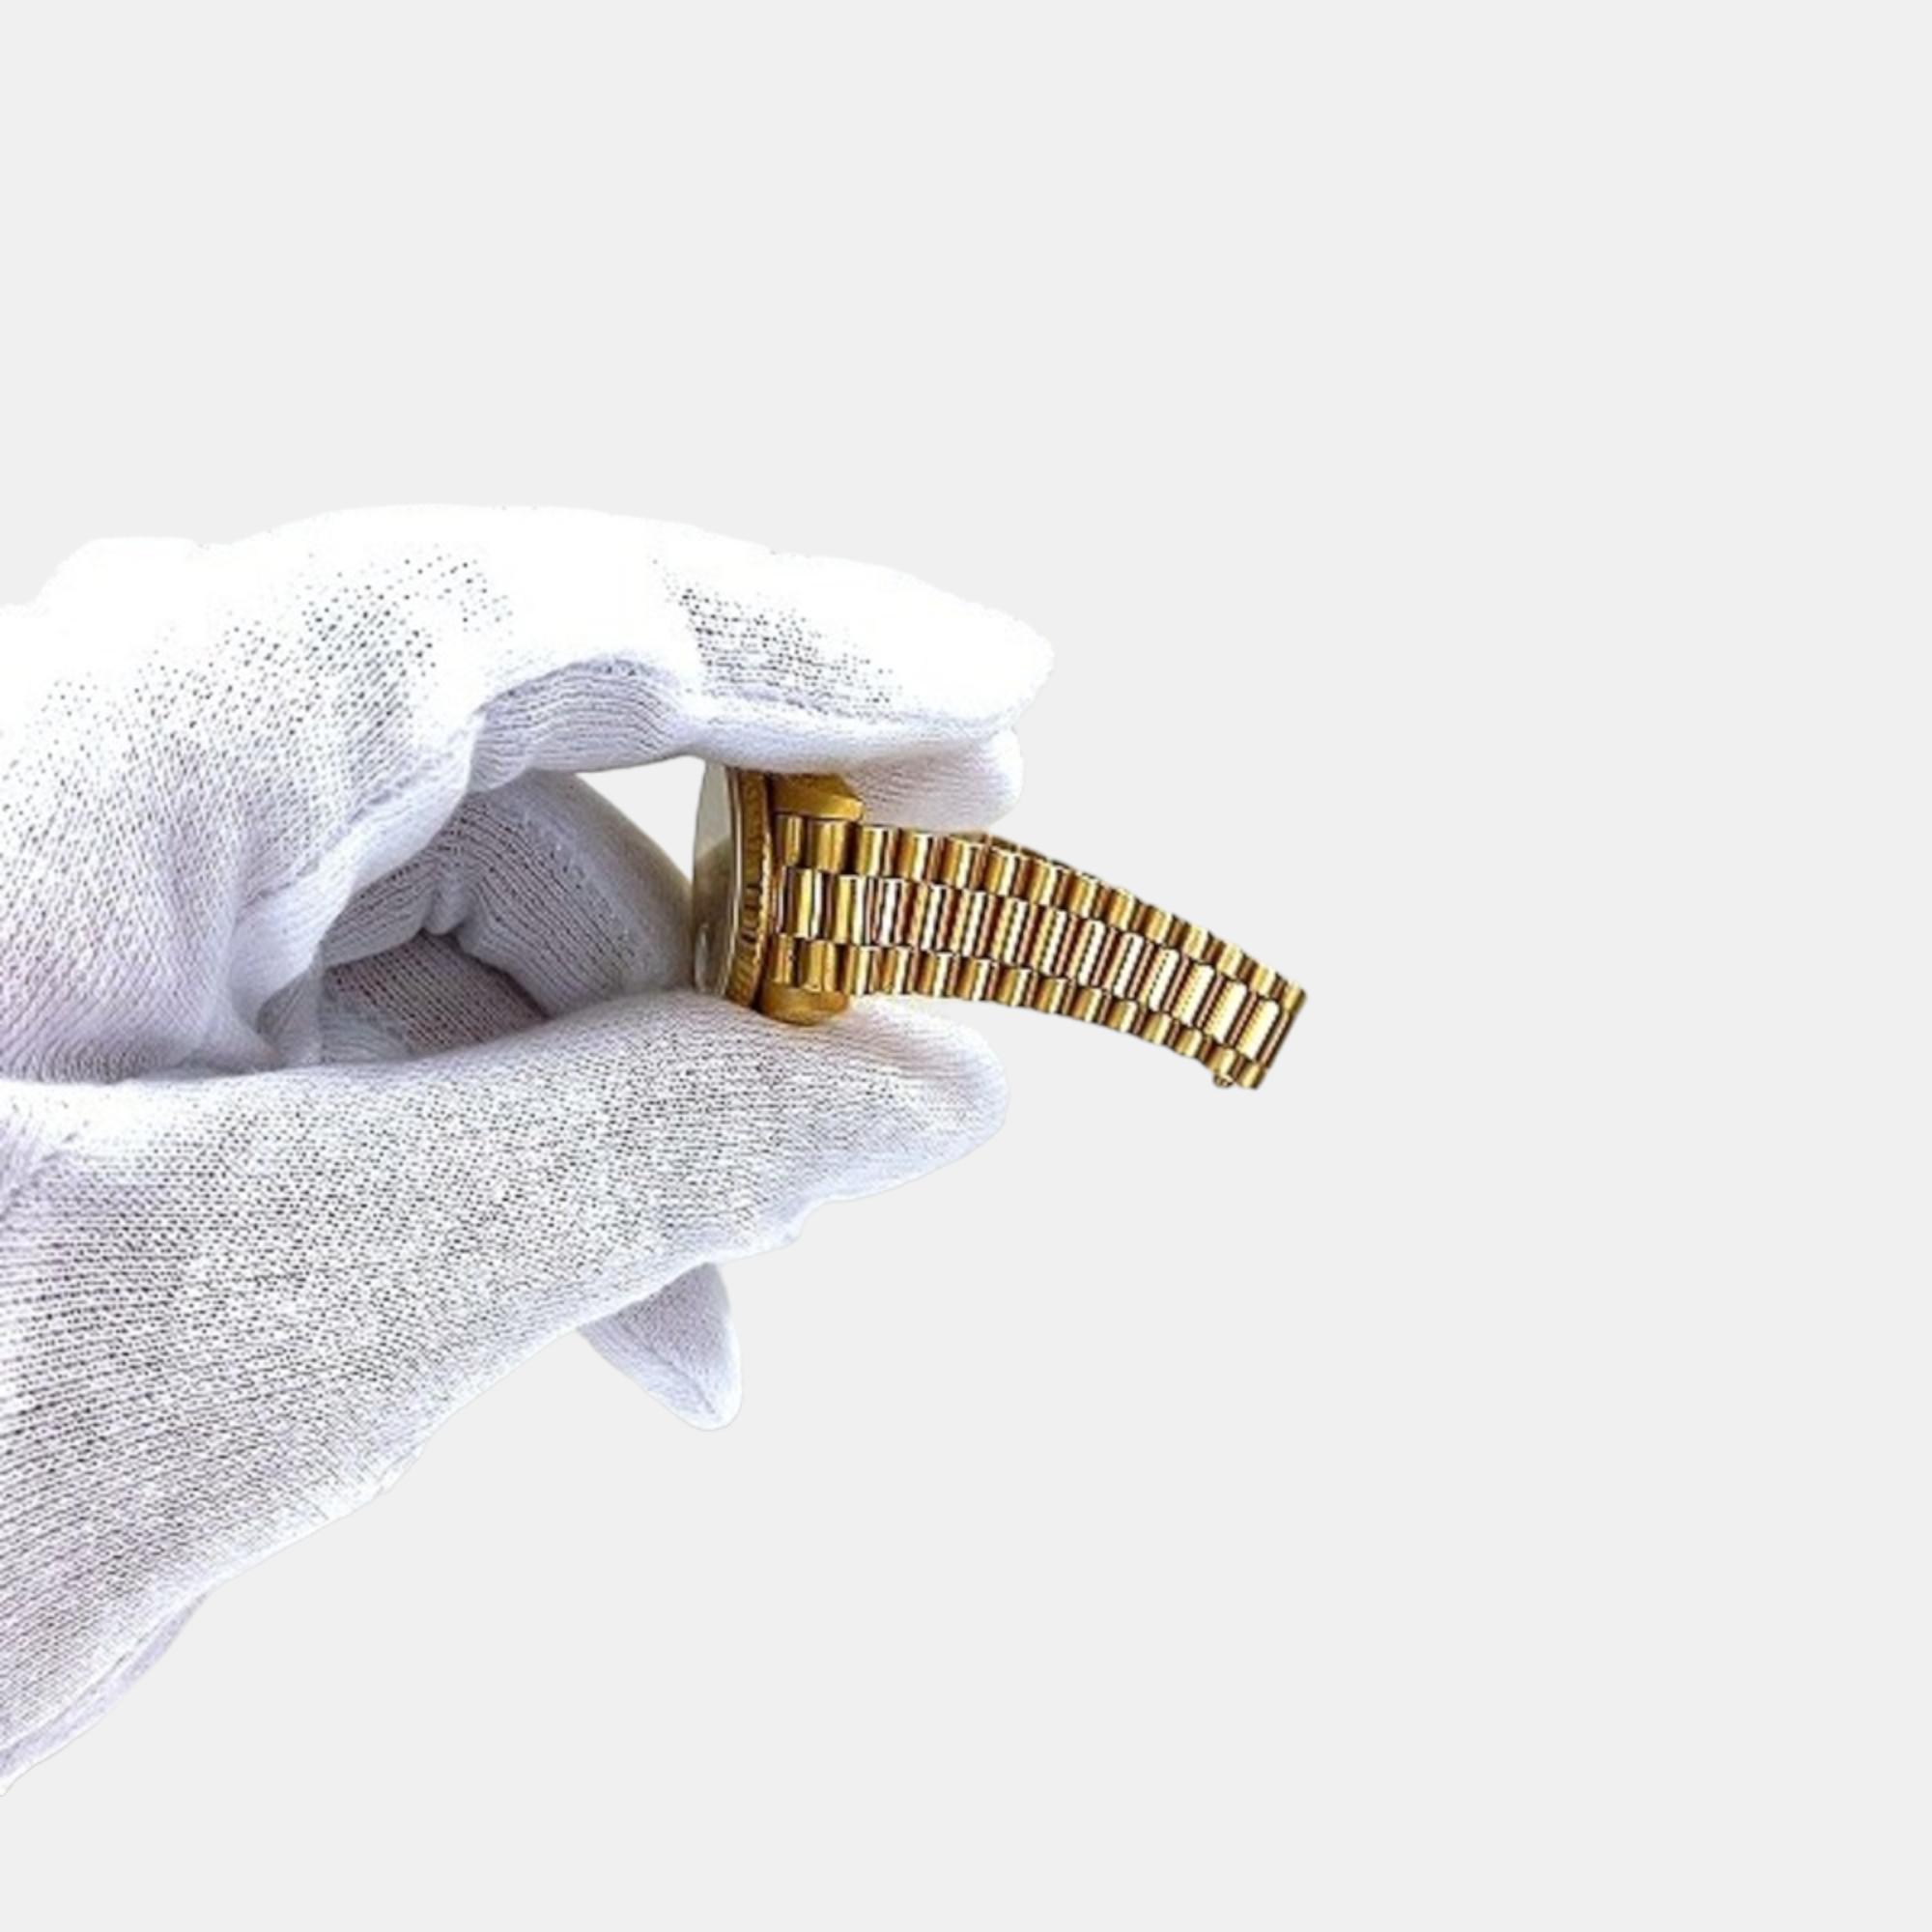 Rolex Champagne Diamond 18k Yellow Gold Datejust 69178 Automatic Women's Wristwatch 27 Mm